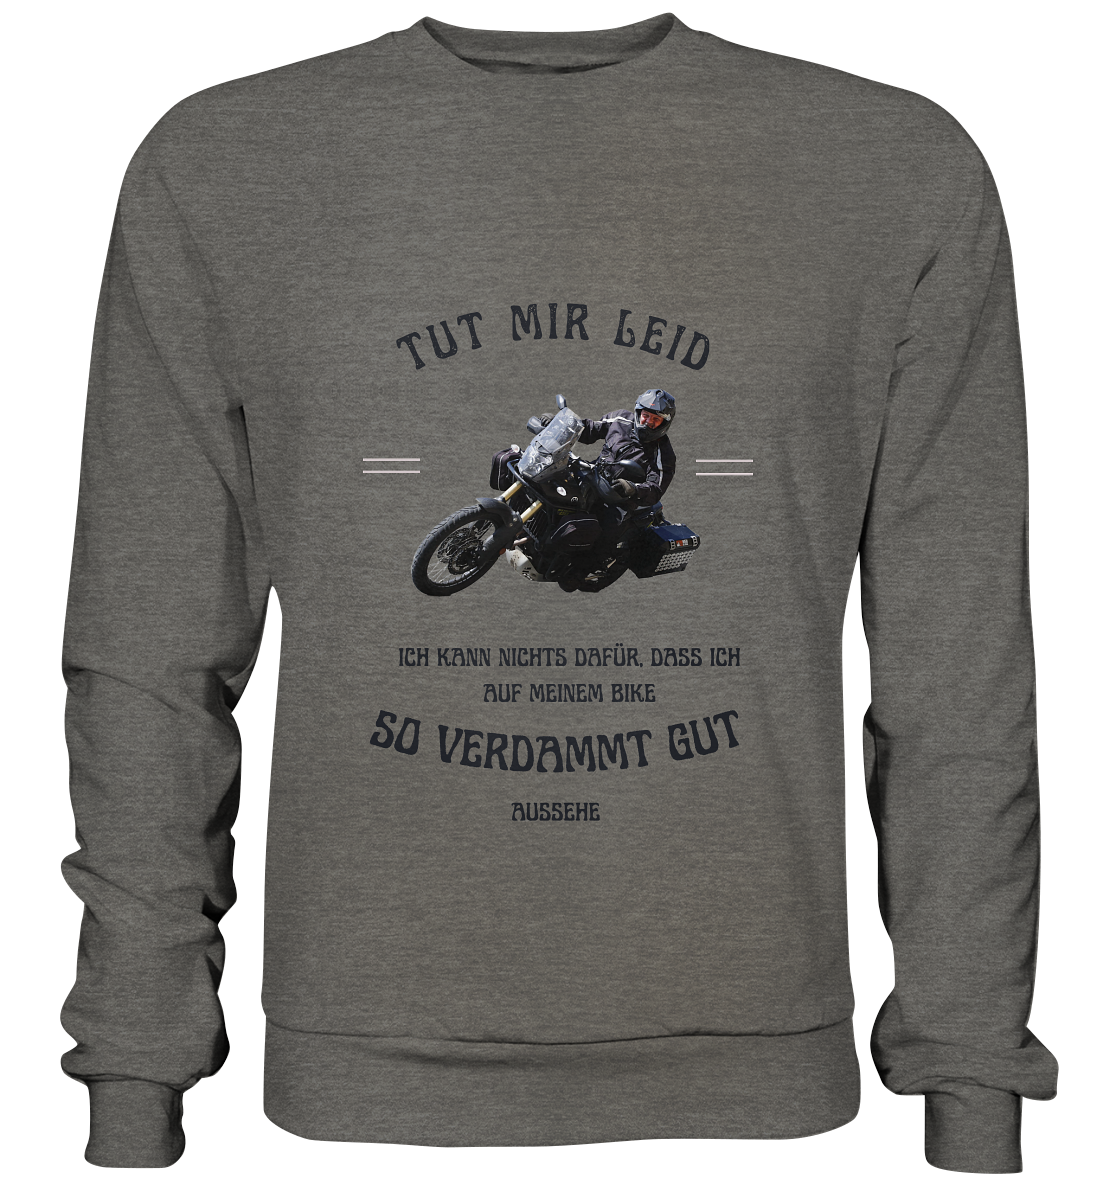 "Tut mir leid, ich kann nichts dafür, dass ich auf meinem Bike so verdammt gut aussehe" für Bernd | individualisiertes Sweatshirt mit Foto-Druck und Motorradspruch in dunklem Design